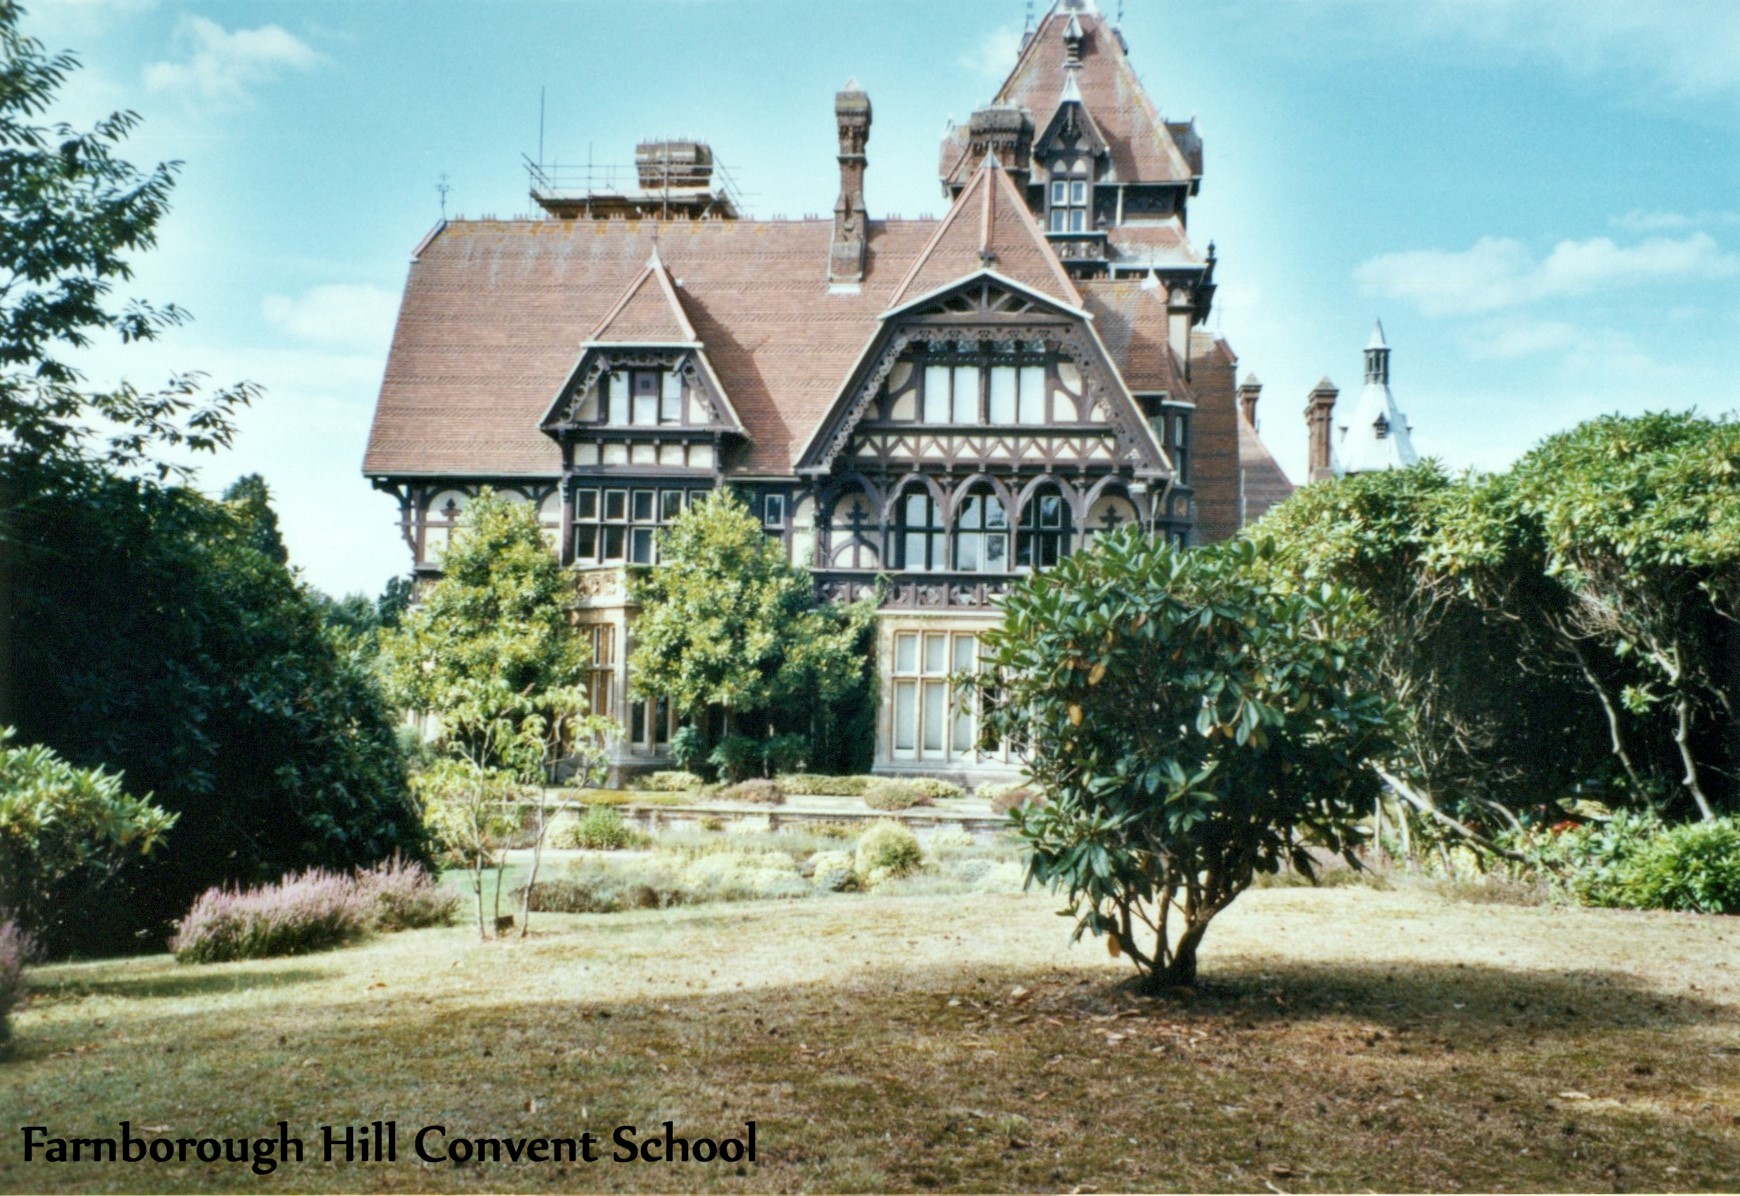 Farnborough Hill Convent